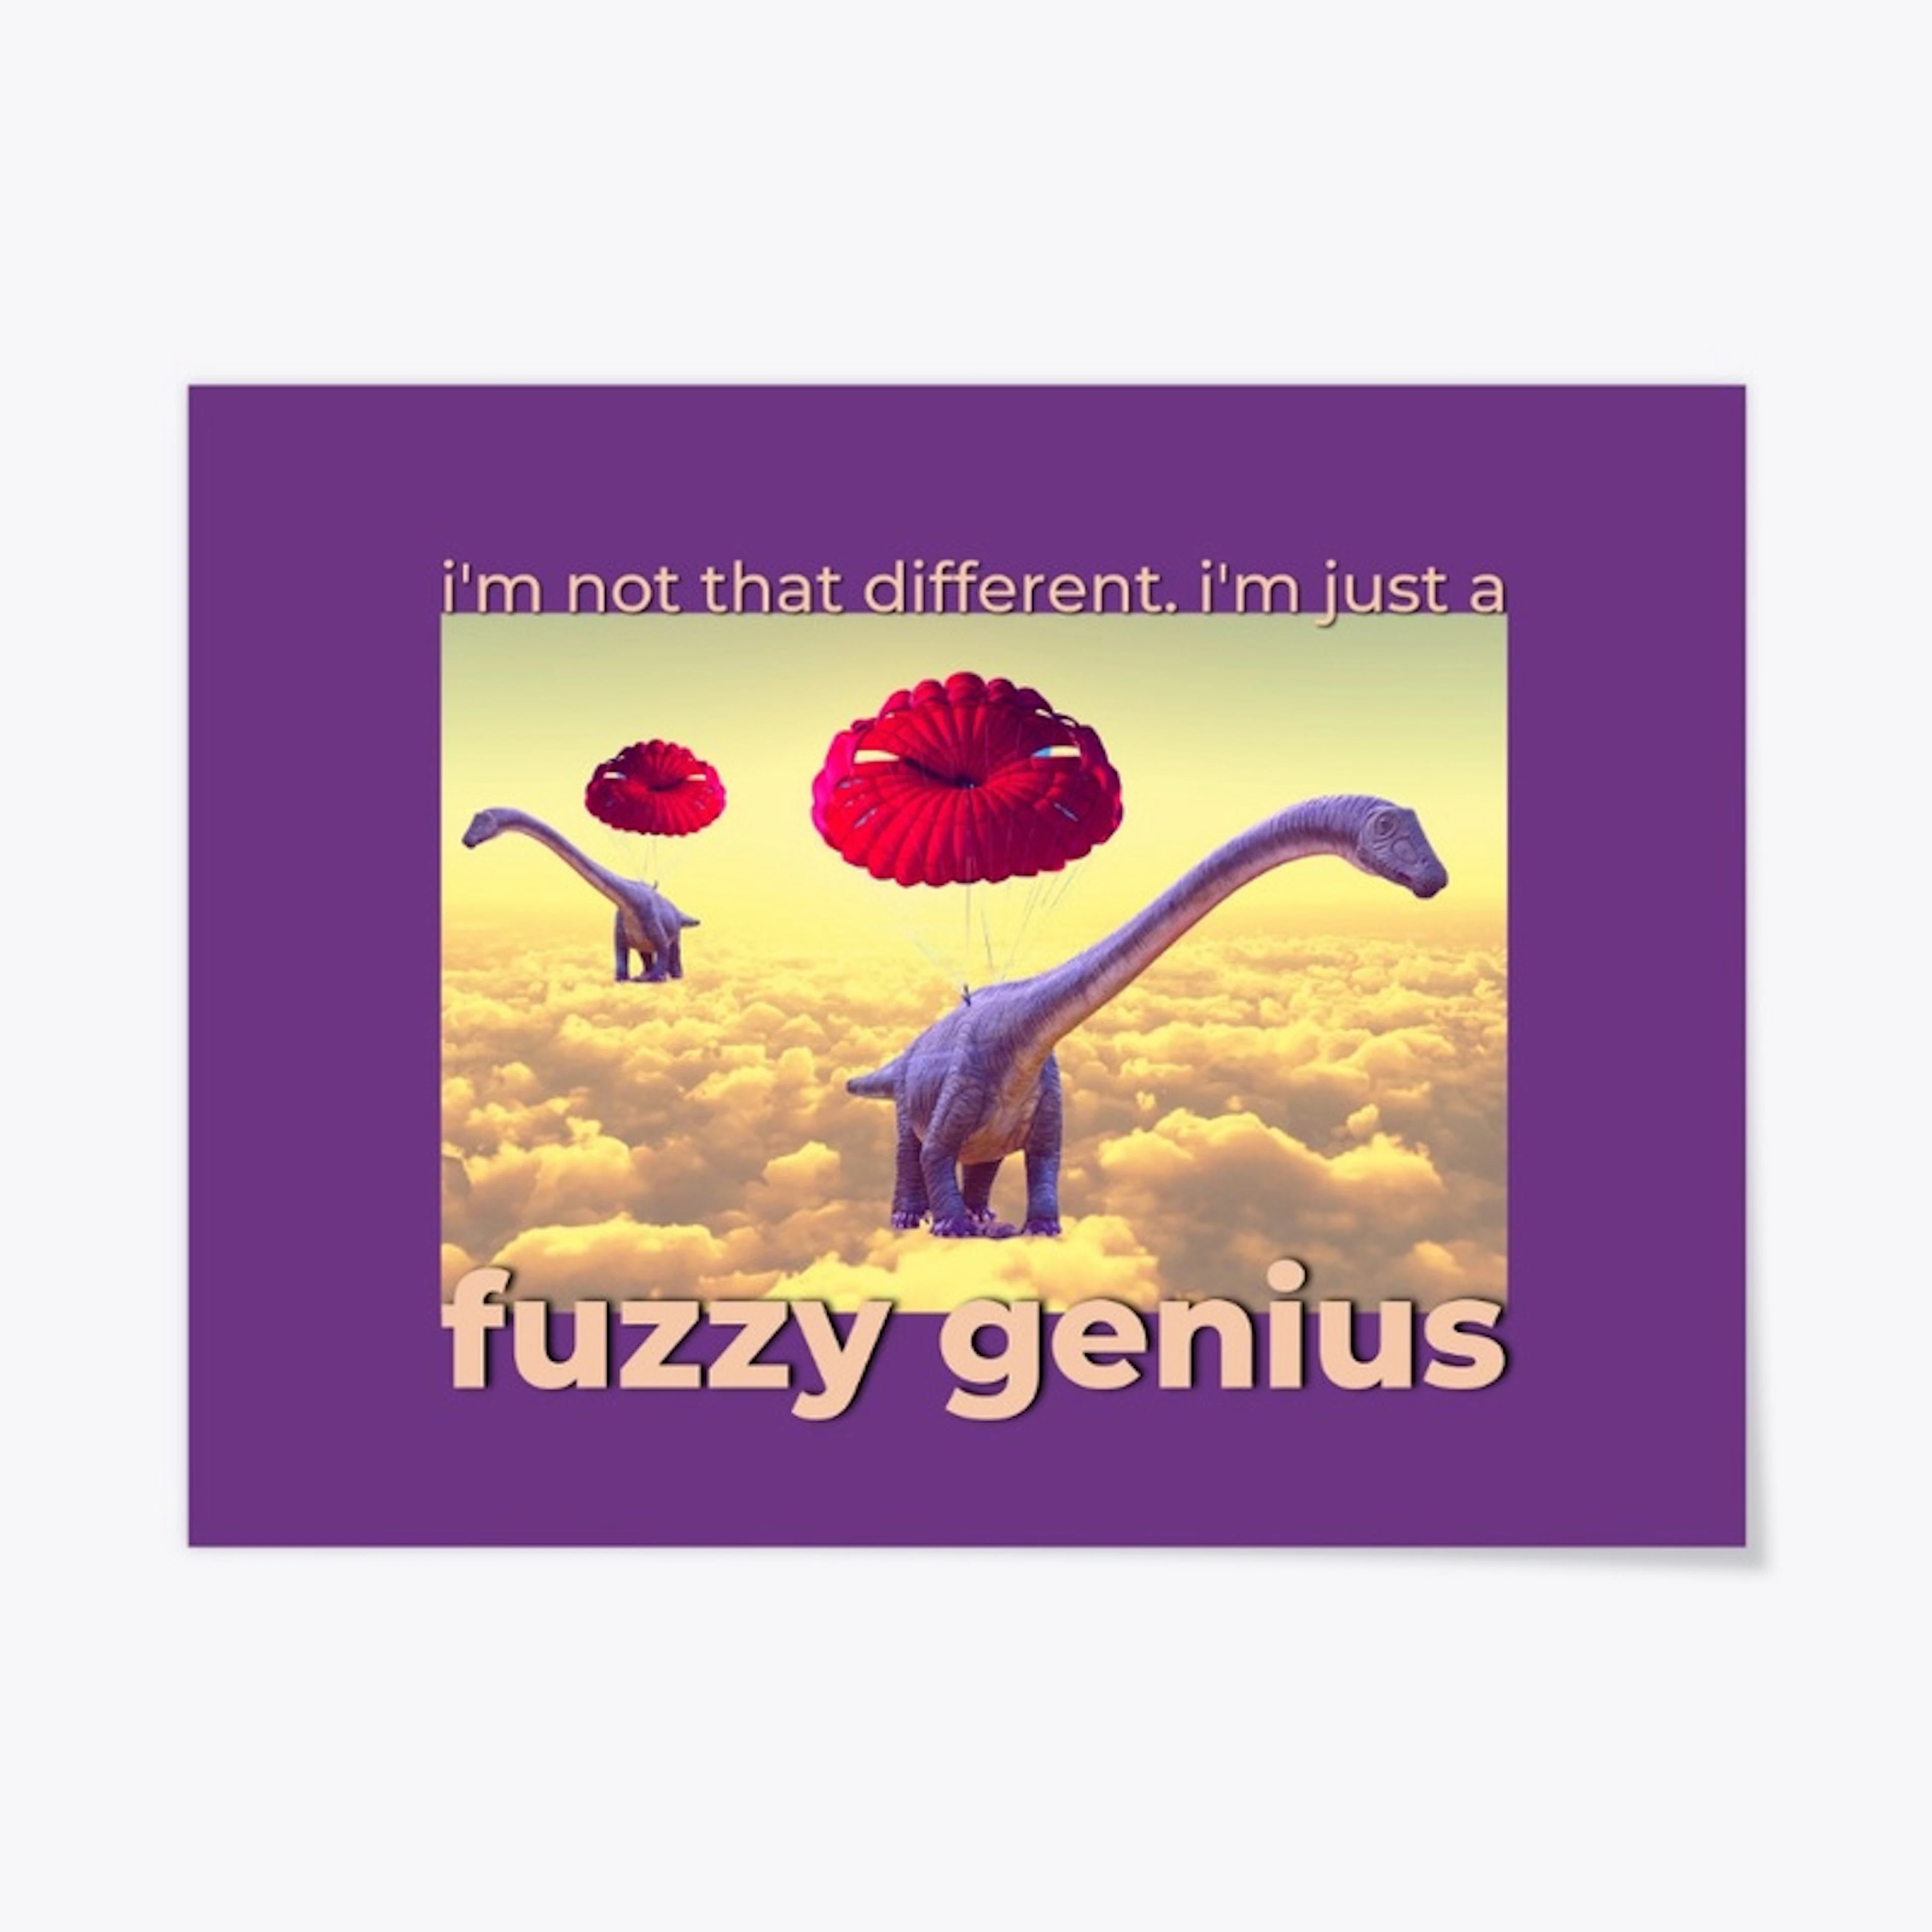 Fuzzy Genius - Parachuting Dinos